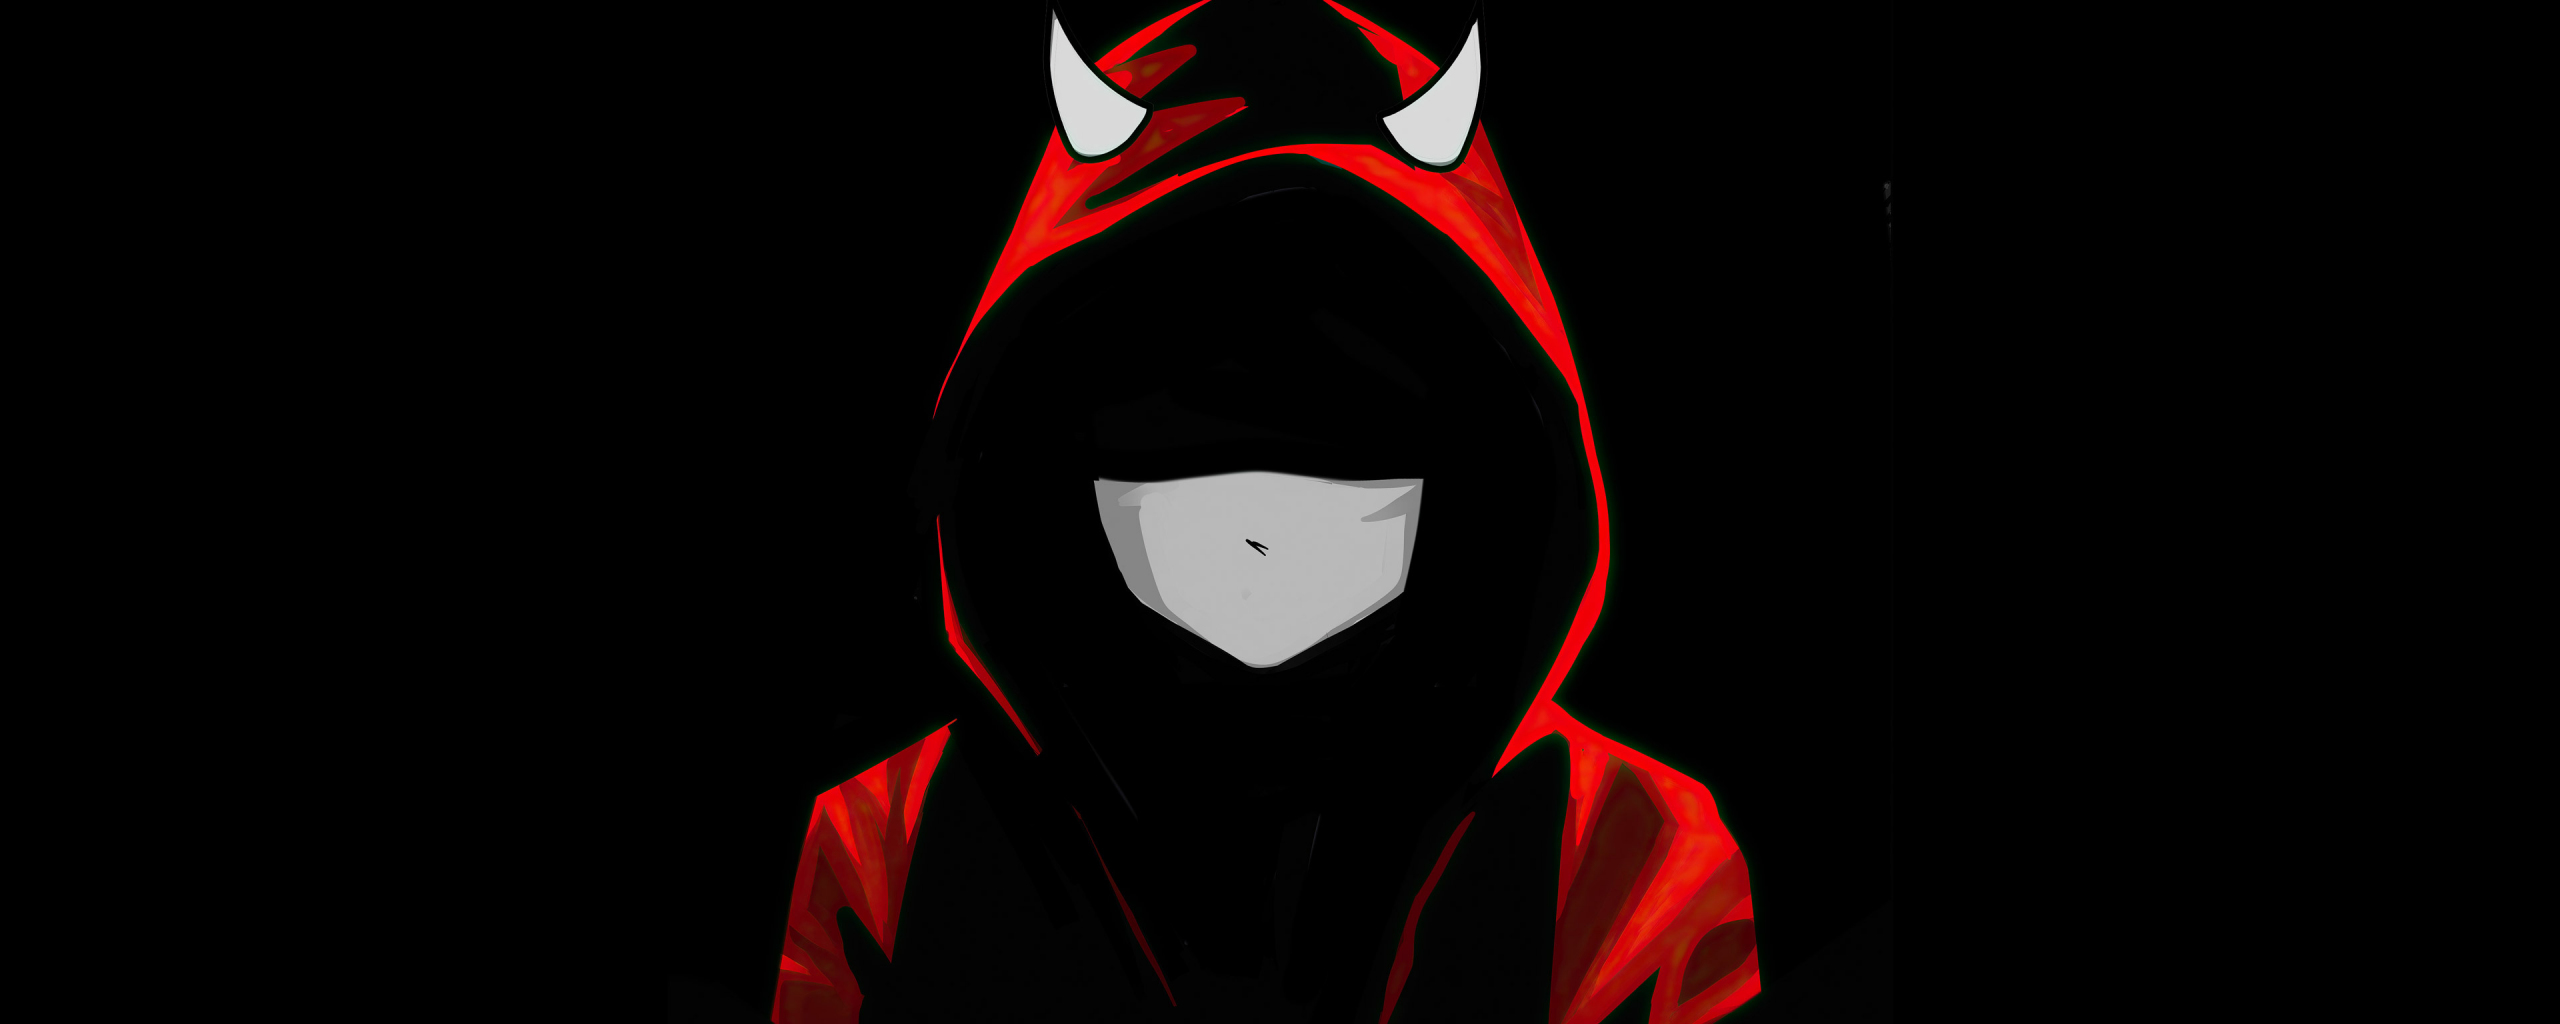 Download wallpaper 2560x1024 devil boy in mask, red hoodie, dark, dual ...